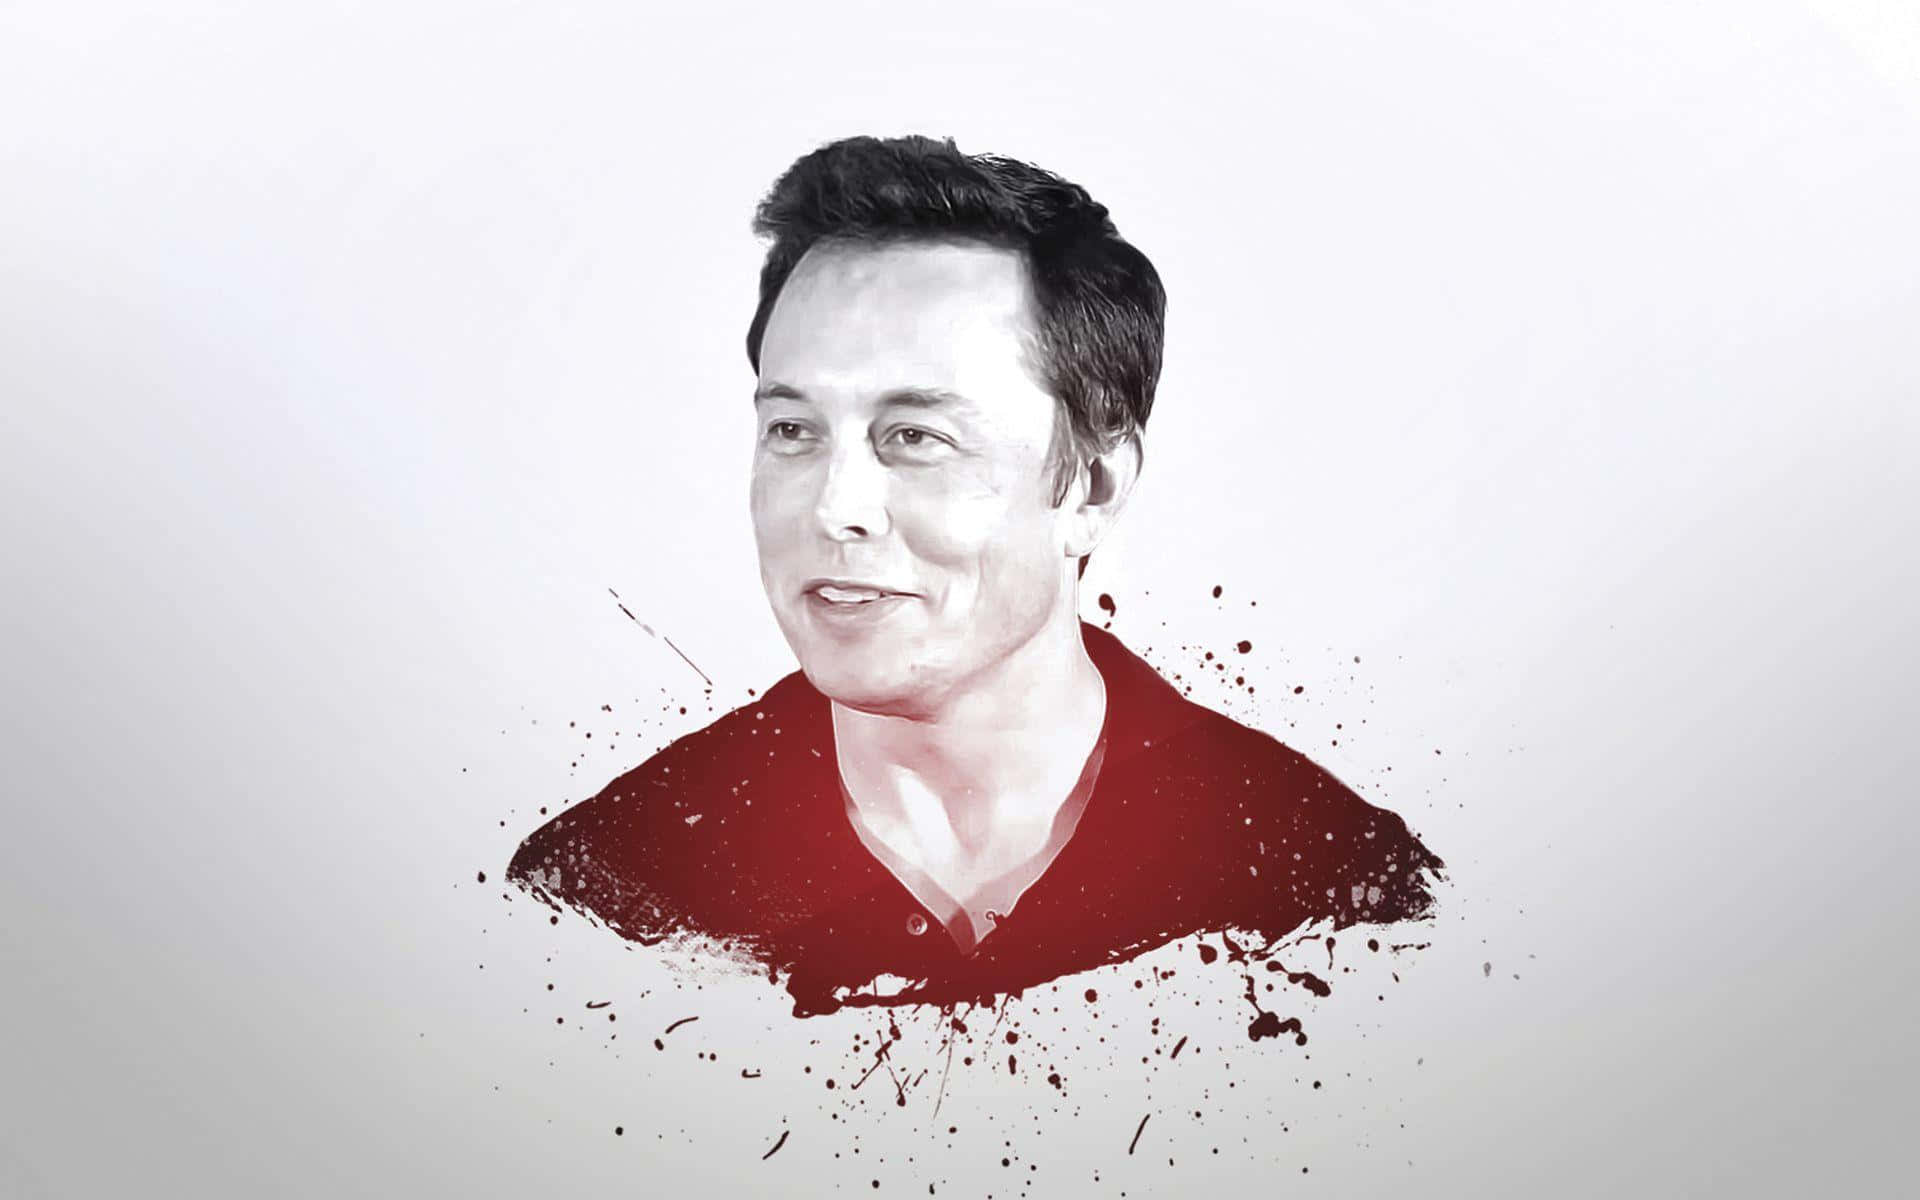 Elonmusk Treibt Innovationen Voran Und Inspiriert Die Welt Mit Seinem Bahnbrechenden Denken.